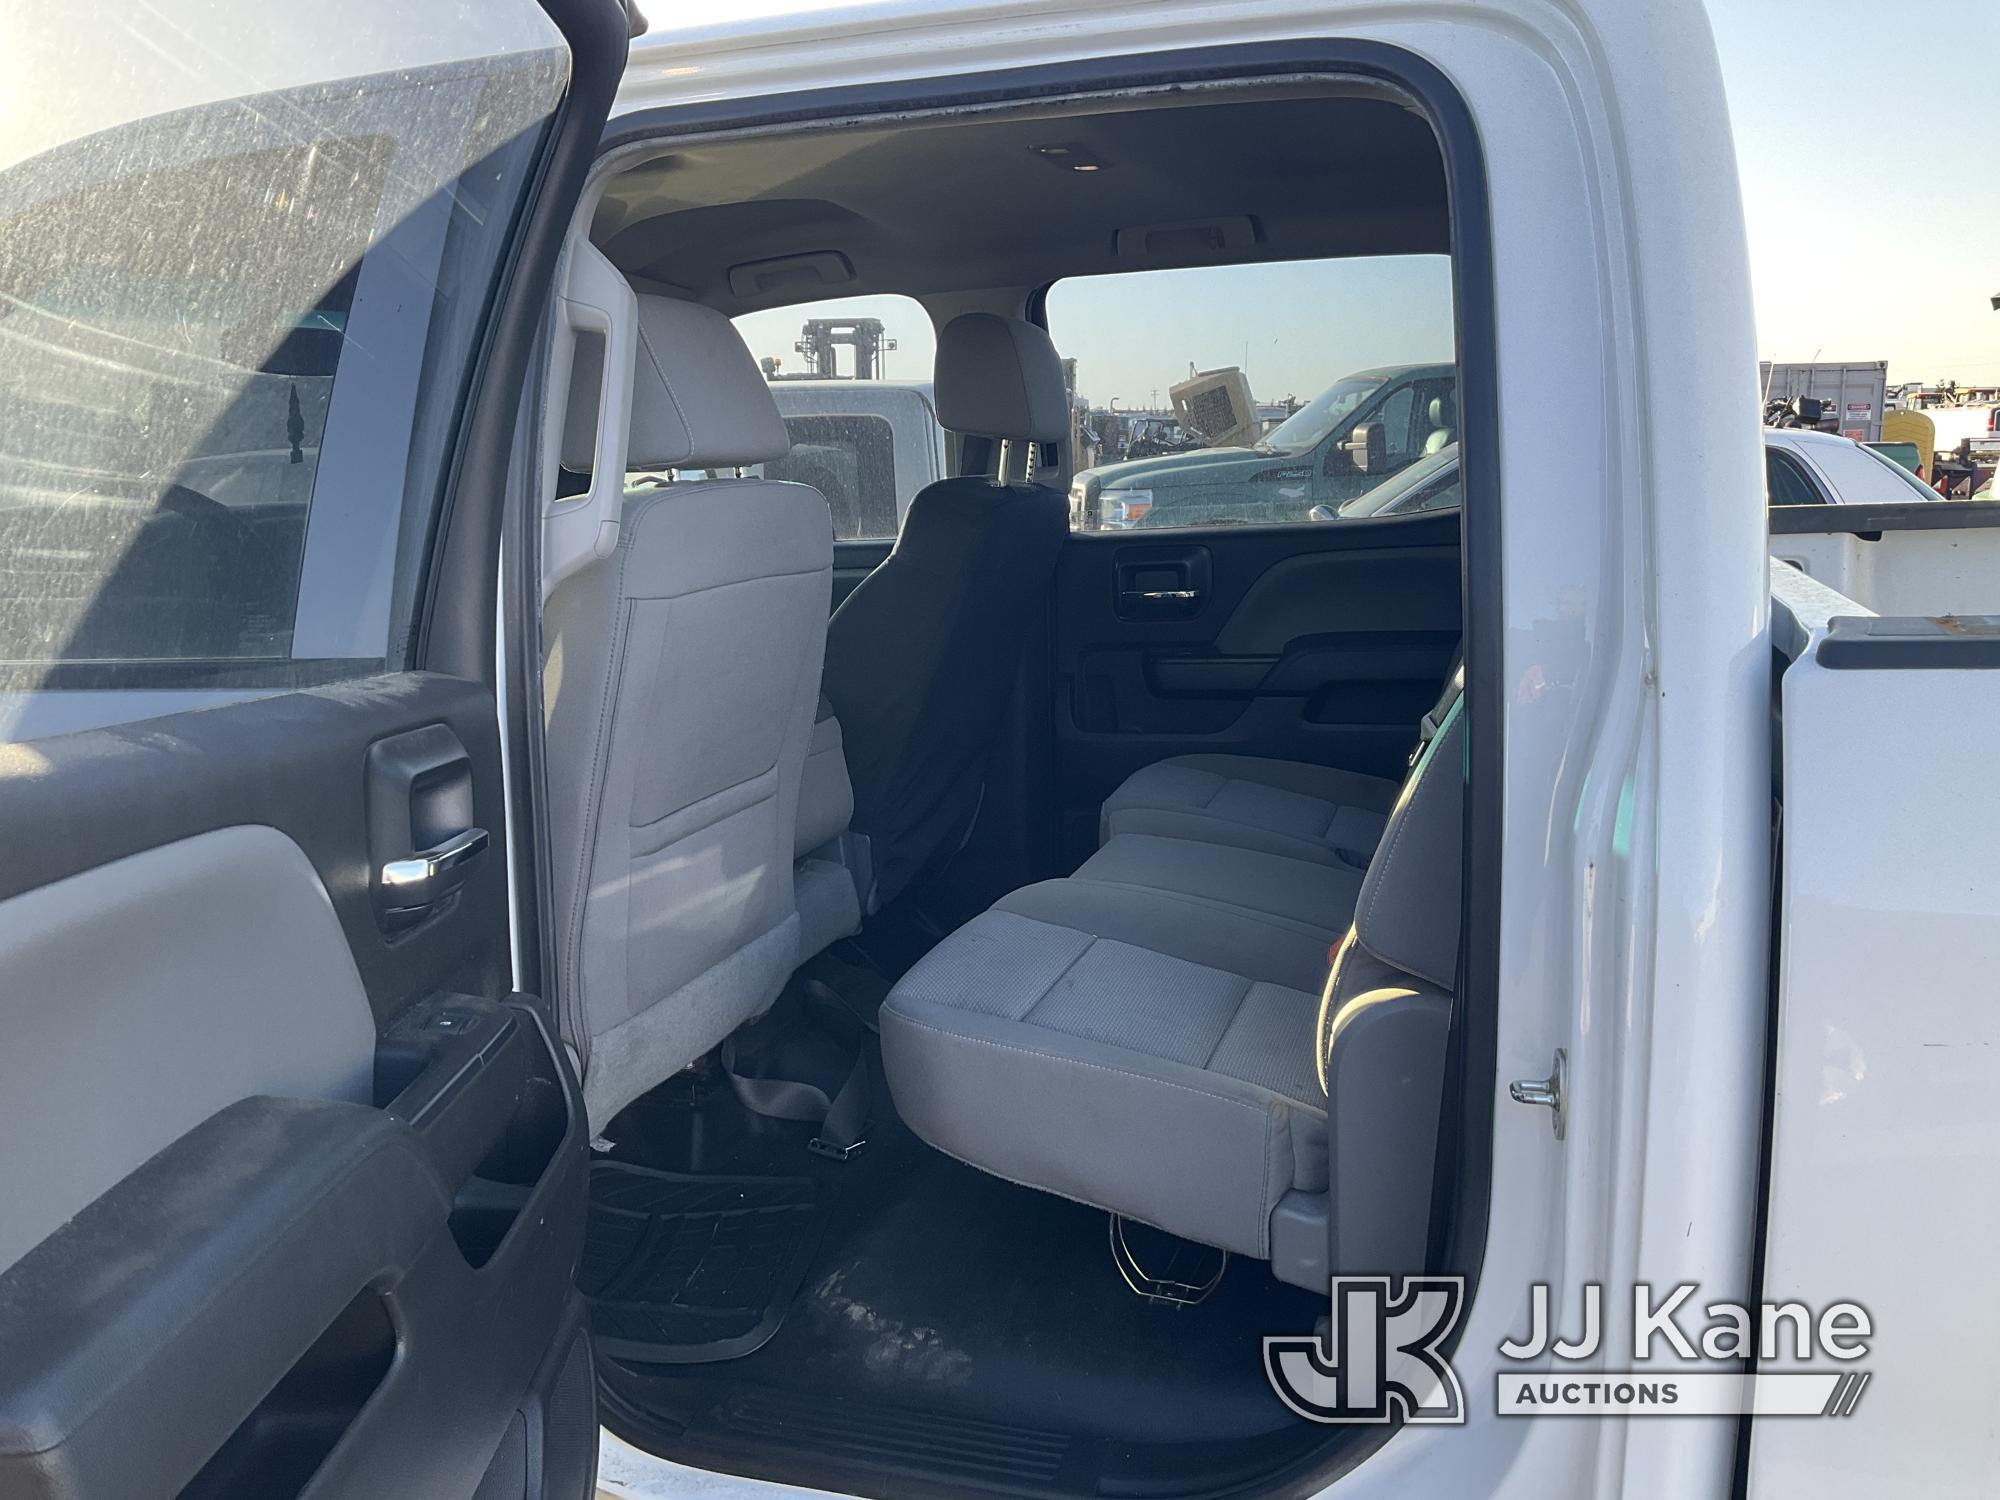 (Dixon, CA) 2018 GMC Sierra 1500 4x4 Crew-Cab Pickup Truck Runs & Moves) (Monitors, Tire Light Is On